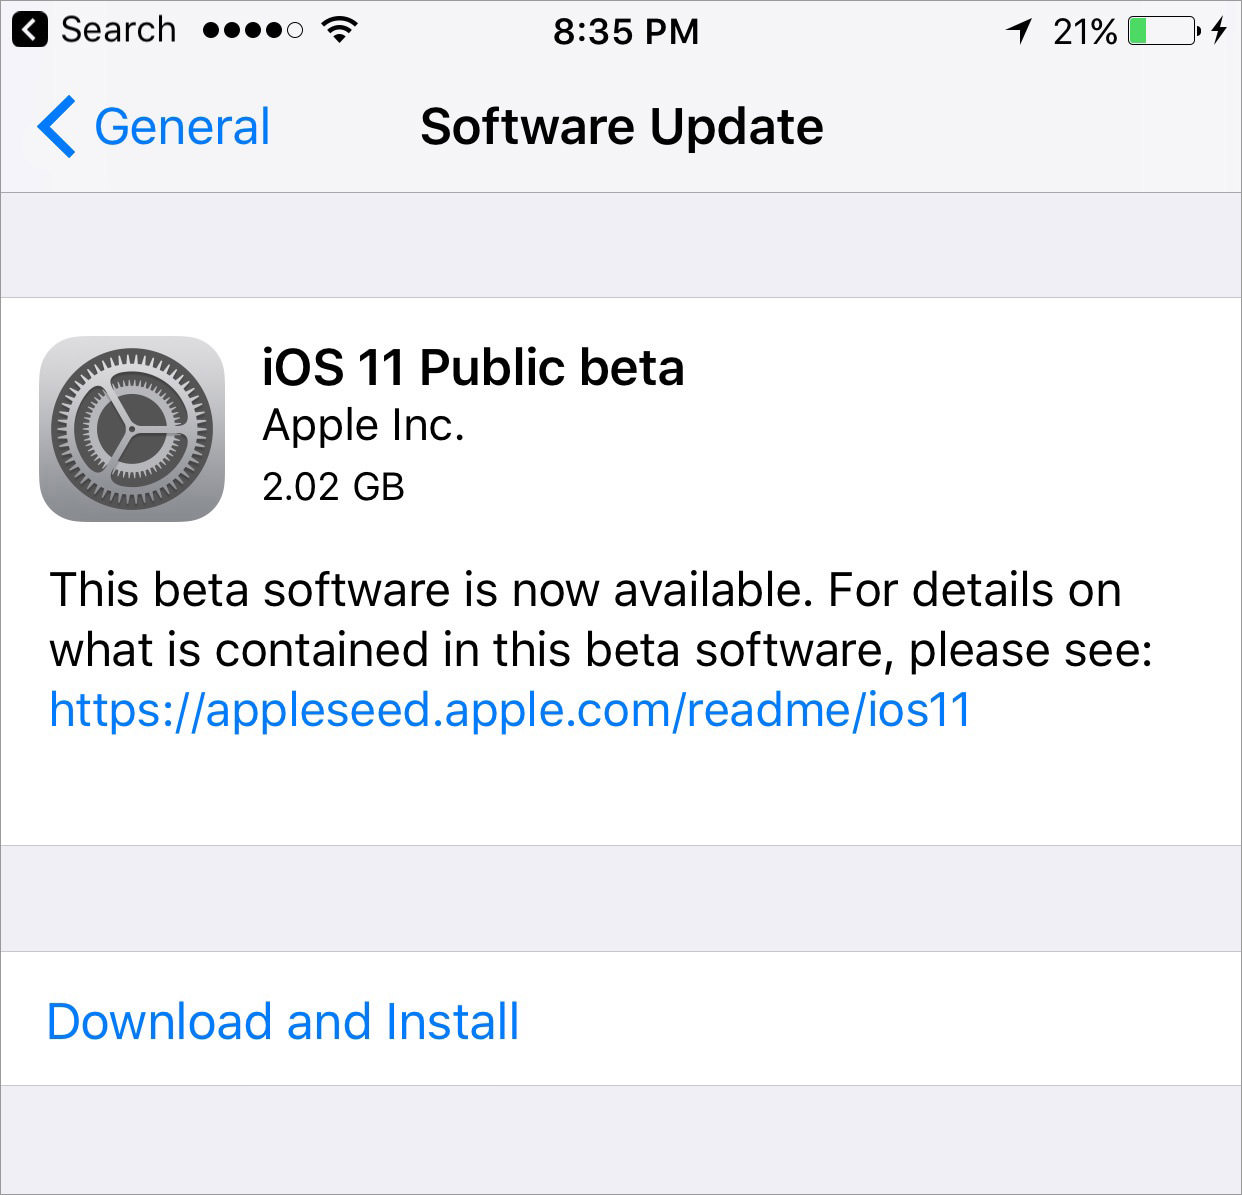 下载并安装 iOS 11 公测版